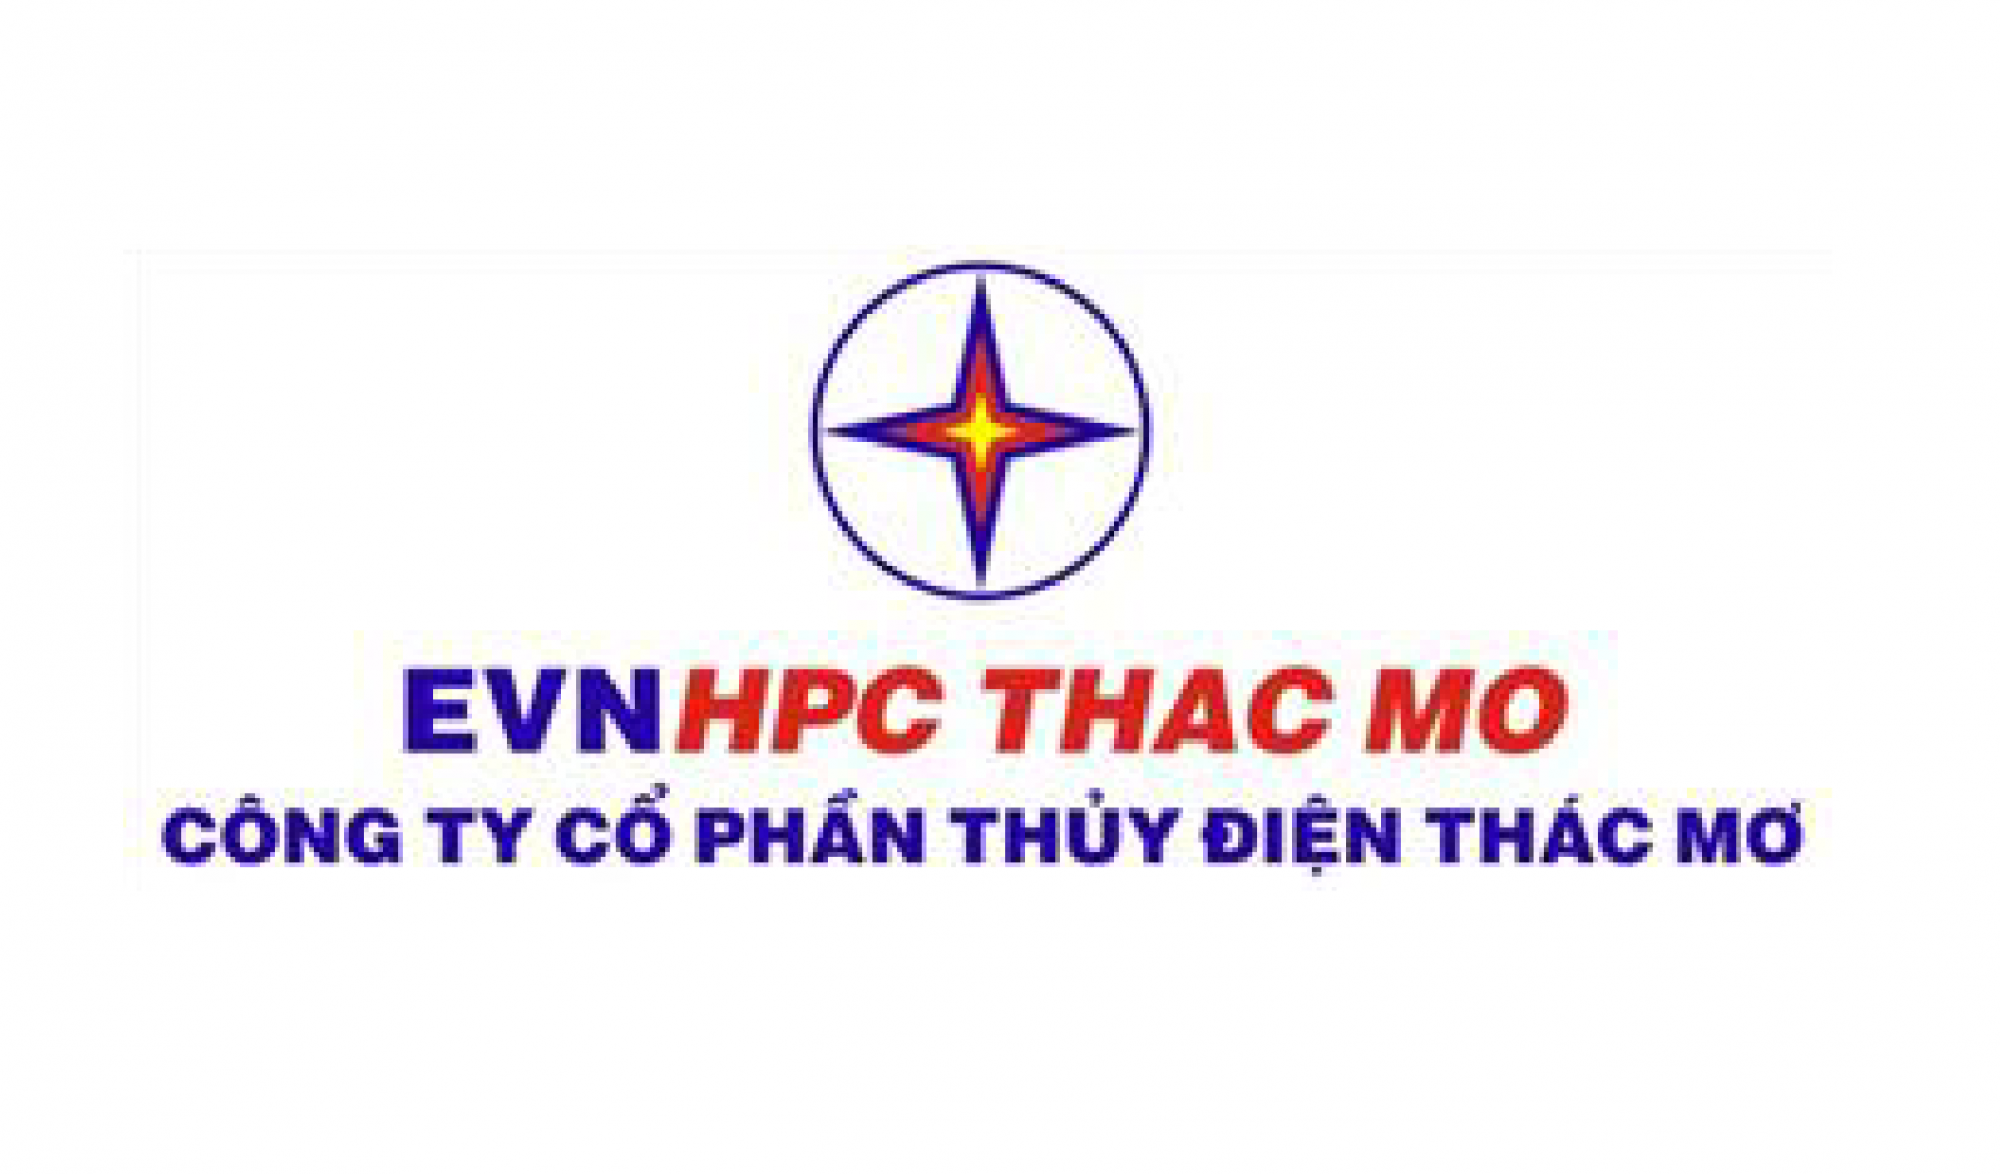 EVN HPC THAC MO - Công Ty Cổ Phần Năng Lượng Mặt Trời Đỏ